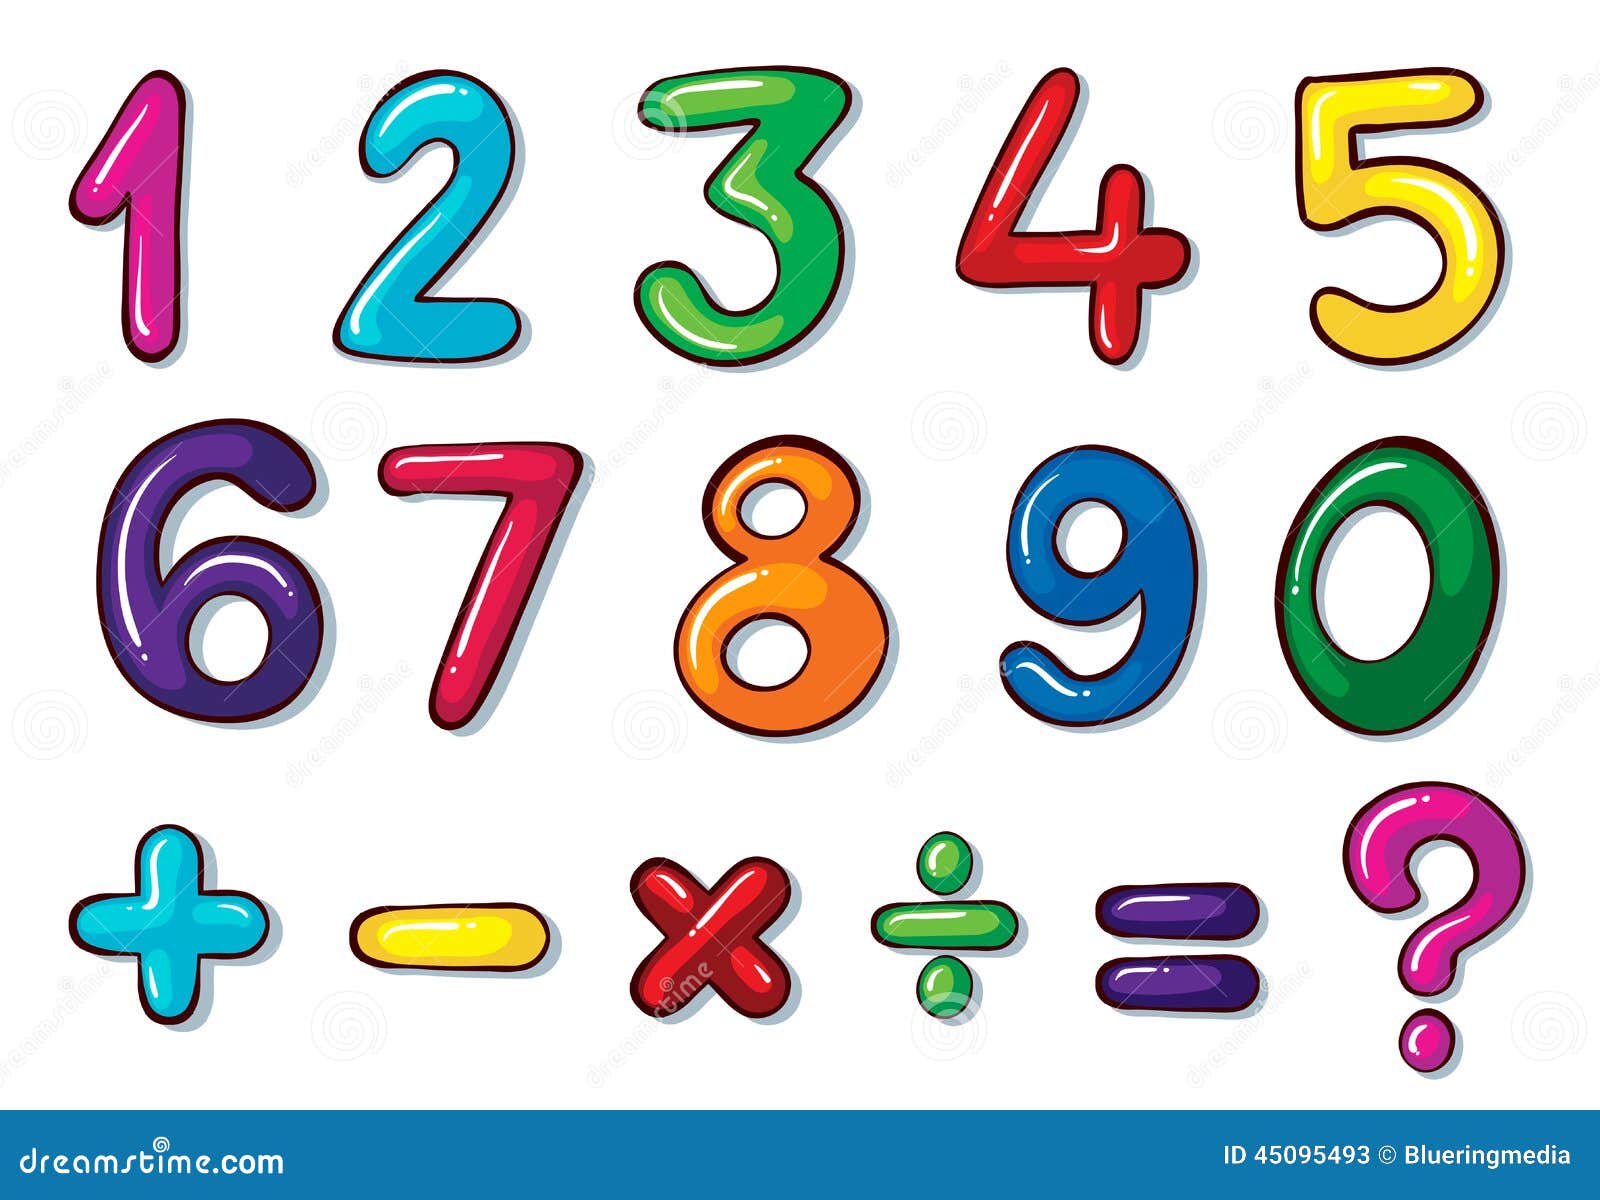 clipart matematica gratis - photo #24